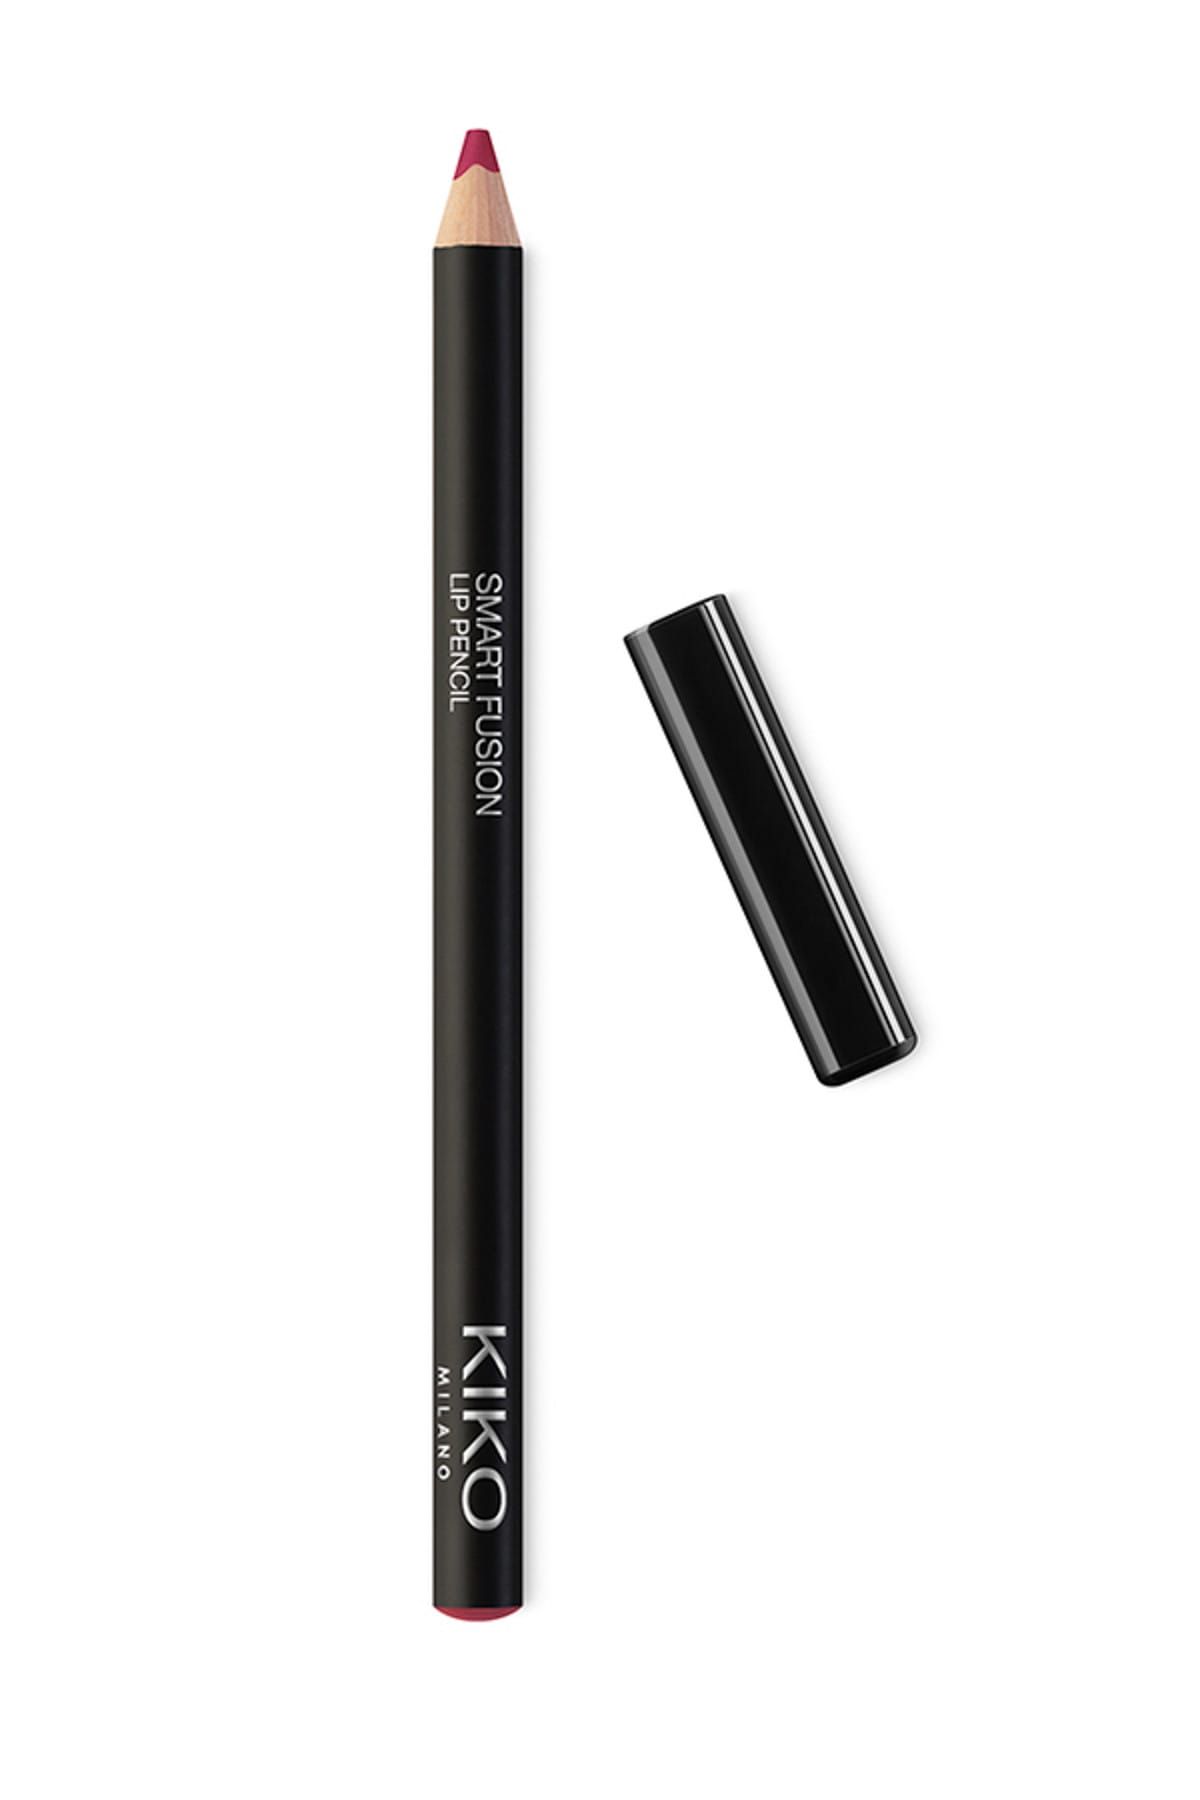 KIKO مداد لب Smart Fusion بافت نرم و روان شماره 528 رنگ قرمز انگوری